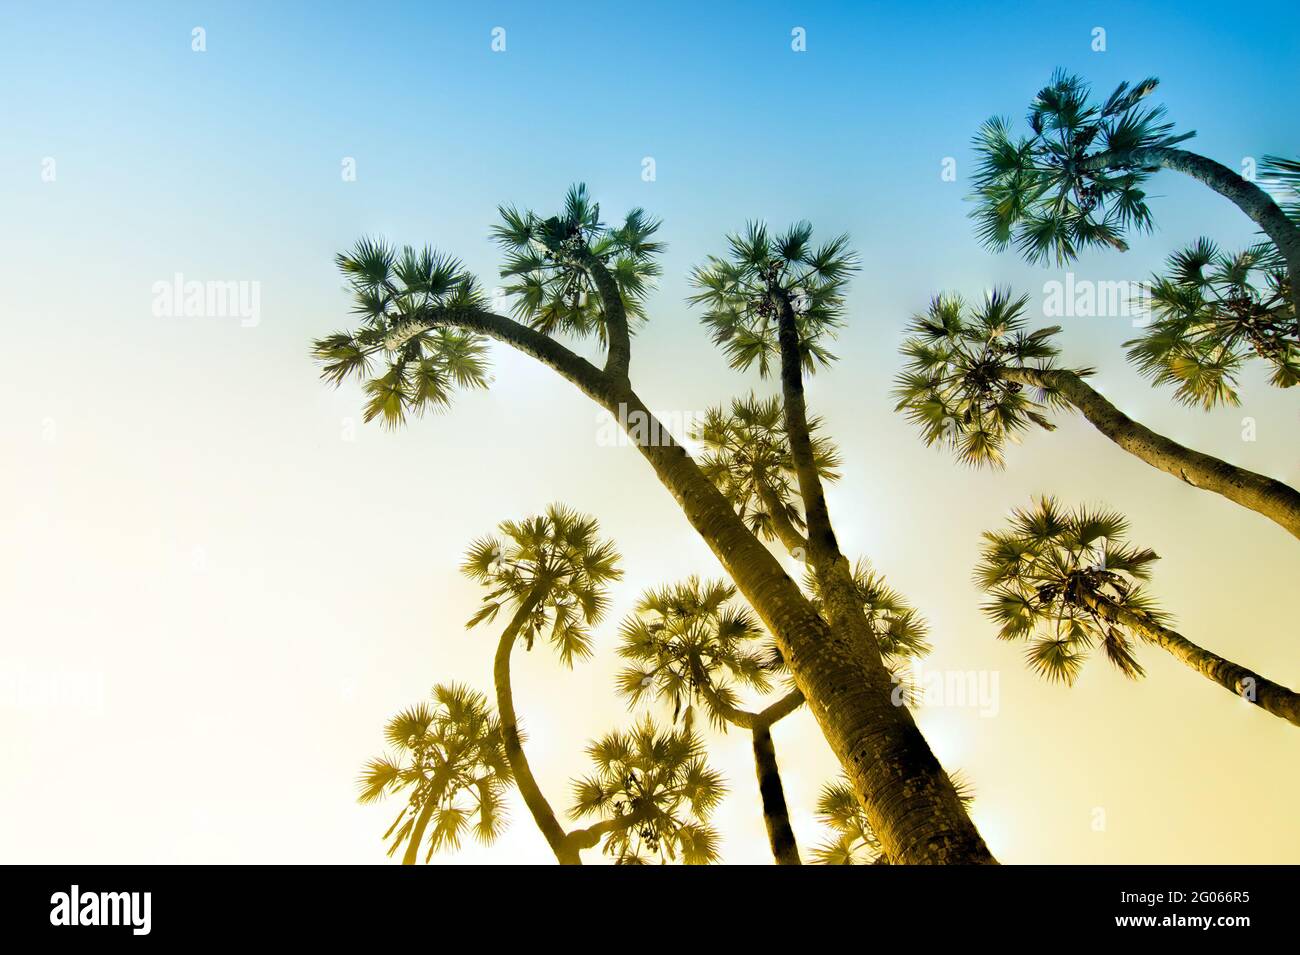 Fokus gestapeltes Bild von Palmen , hoch bis zum blauen Himmel im Hintergrund. Schöne Natur Stock Bild, indische natürliche szenische Aussicht. Stockfoto